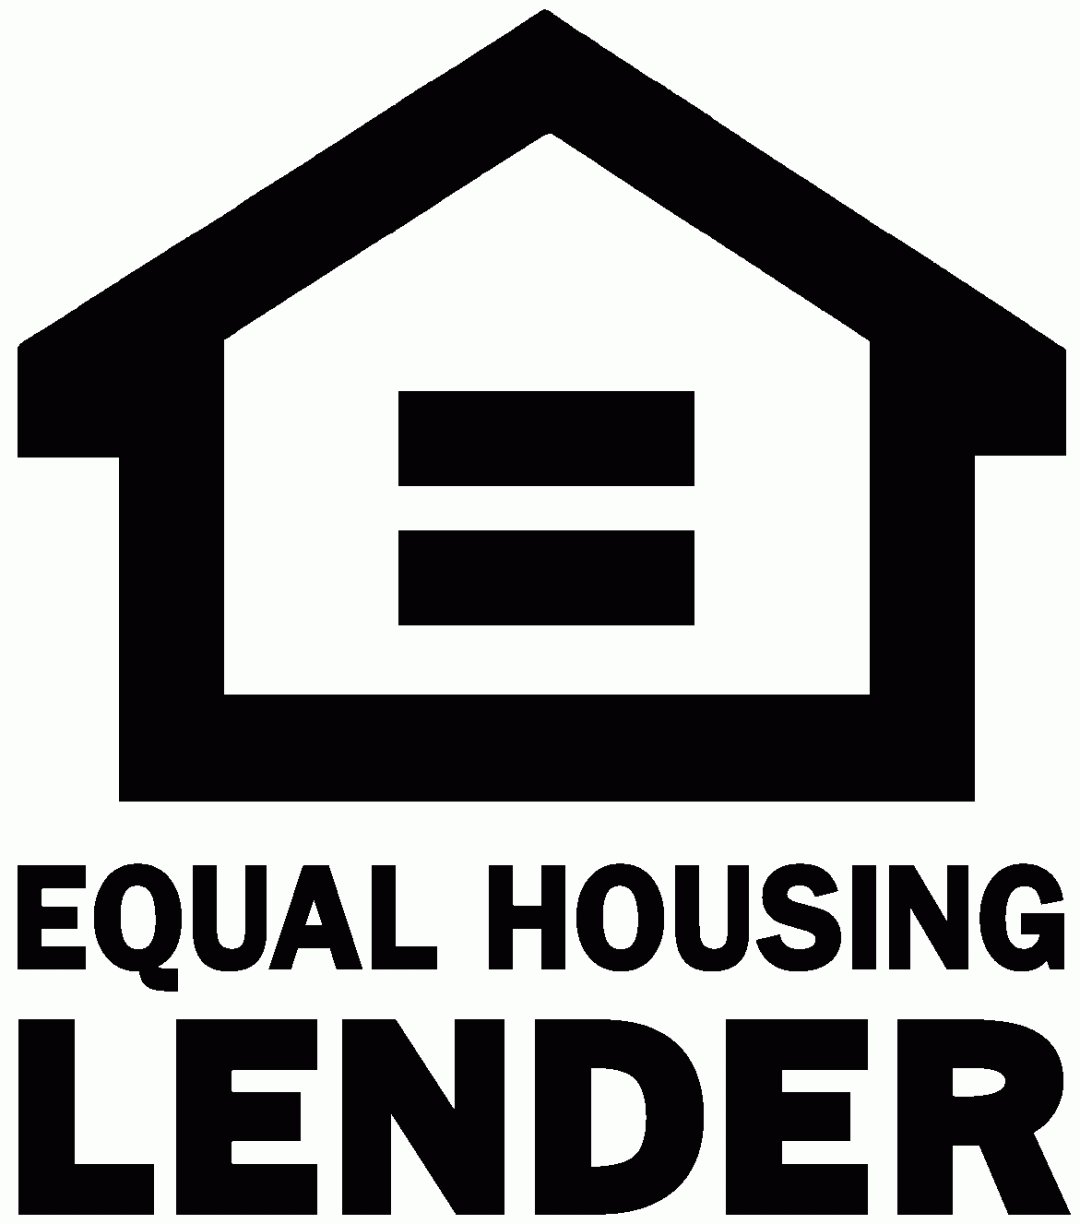 equal housing lender sign